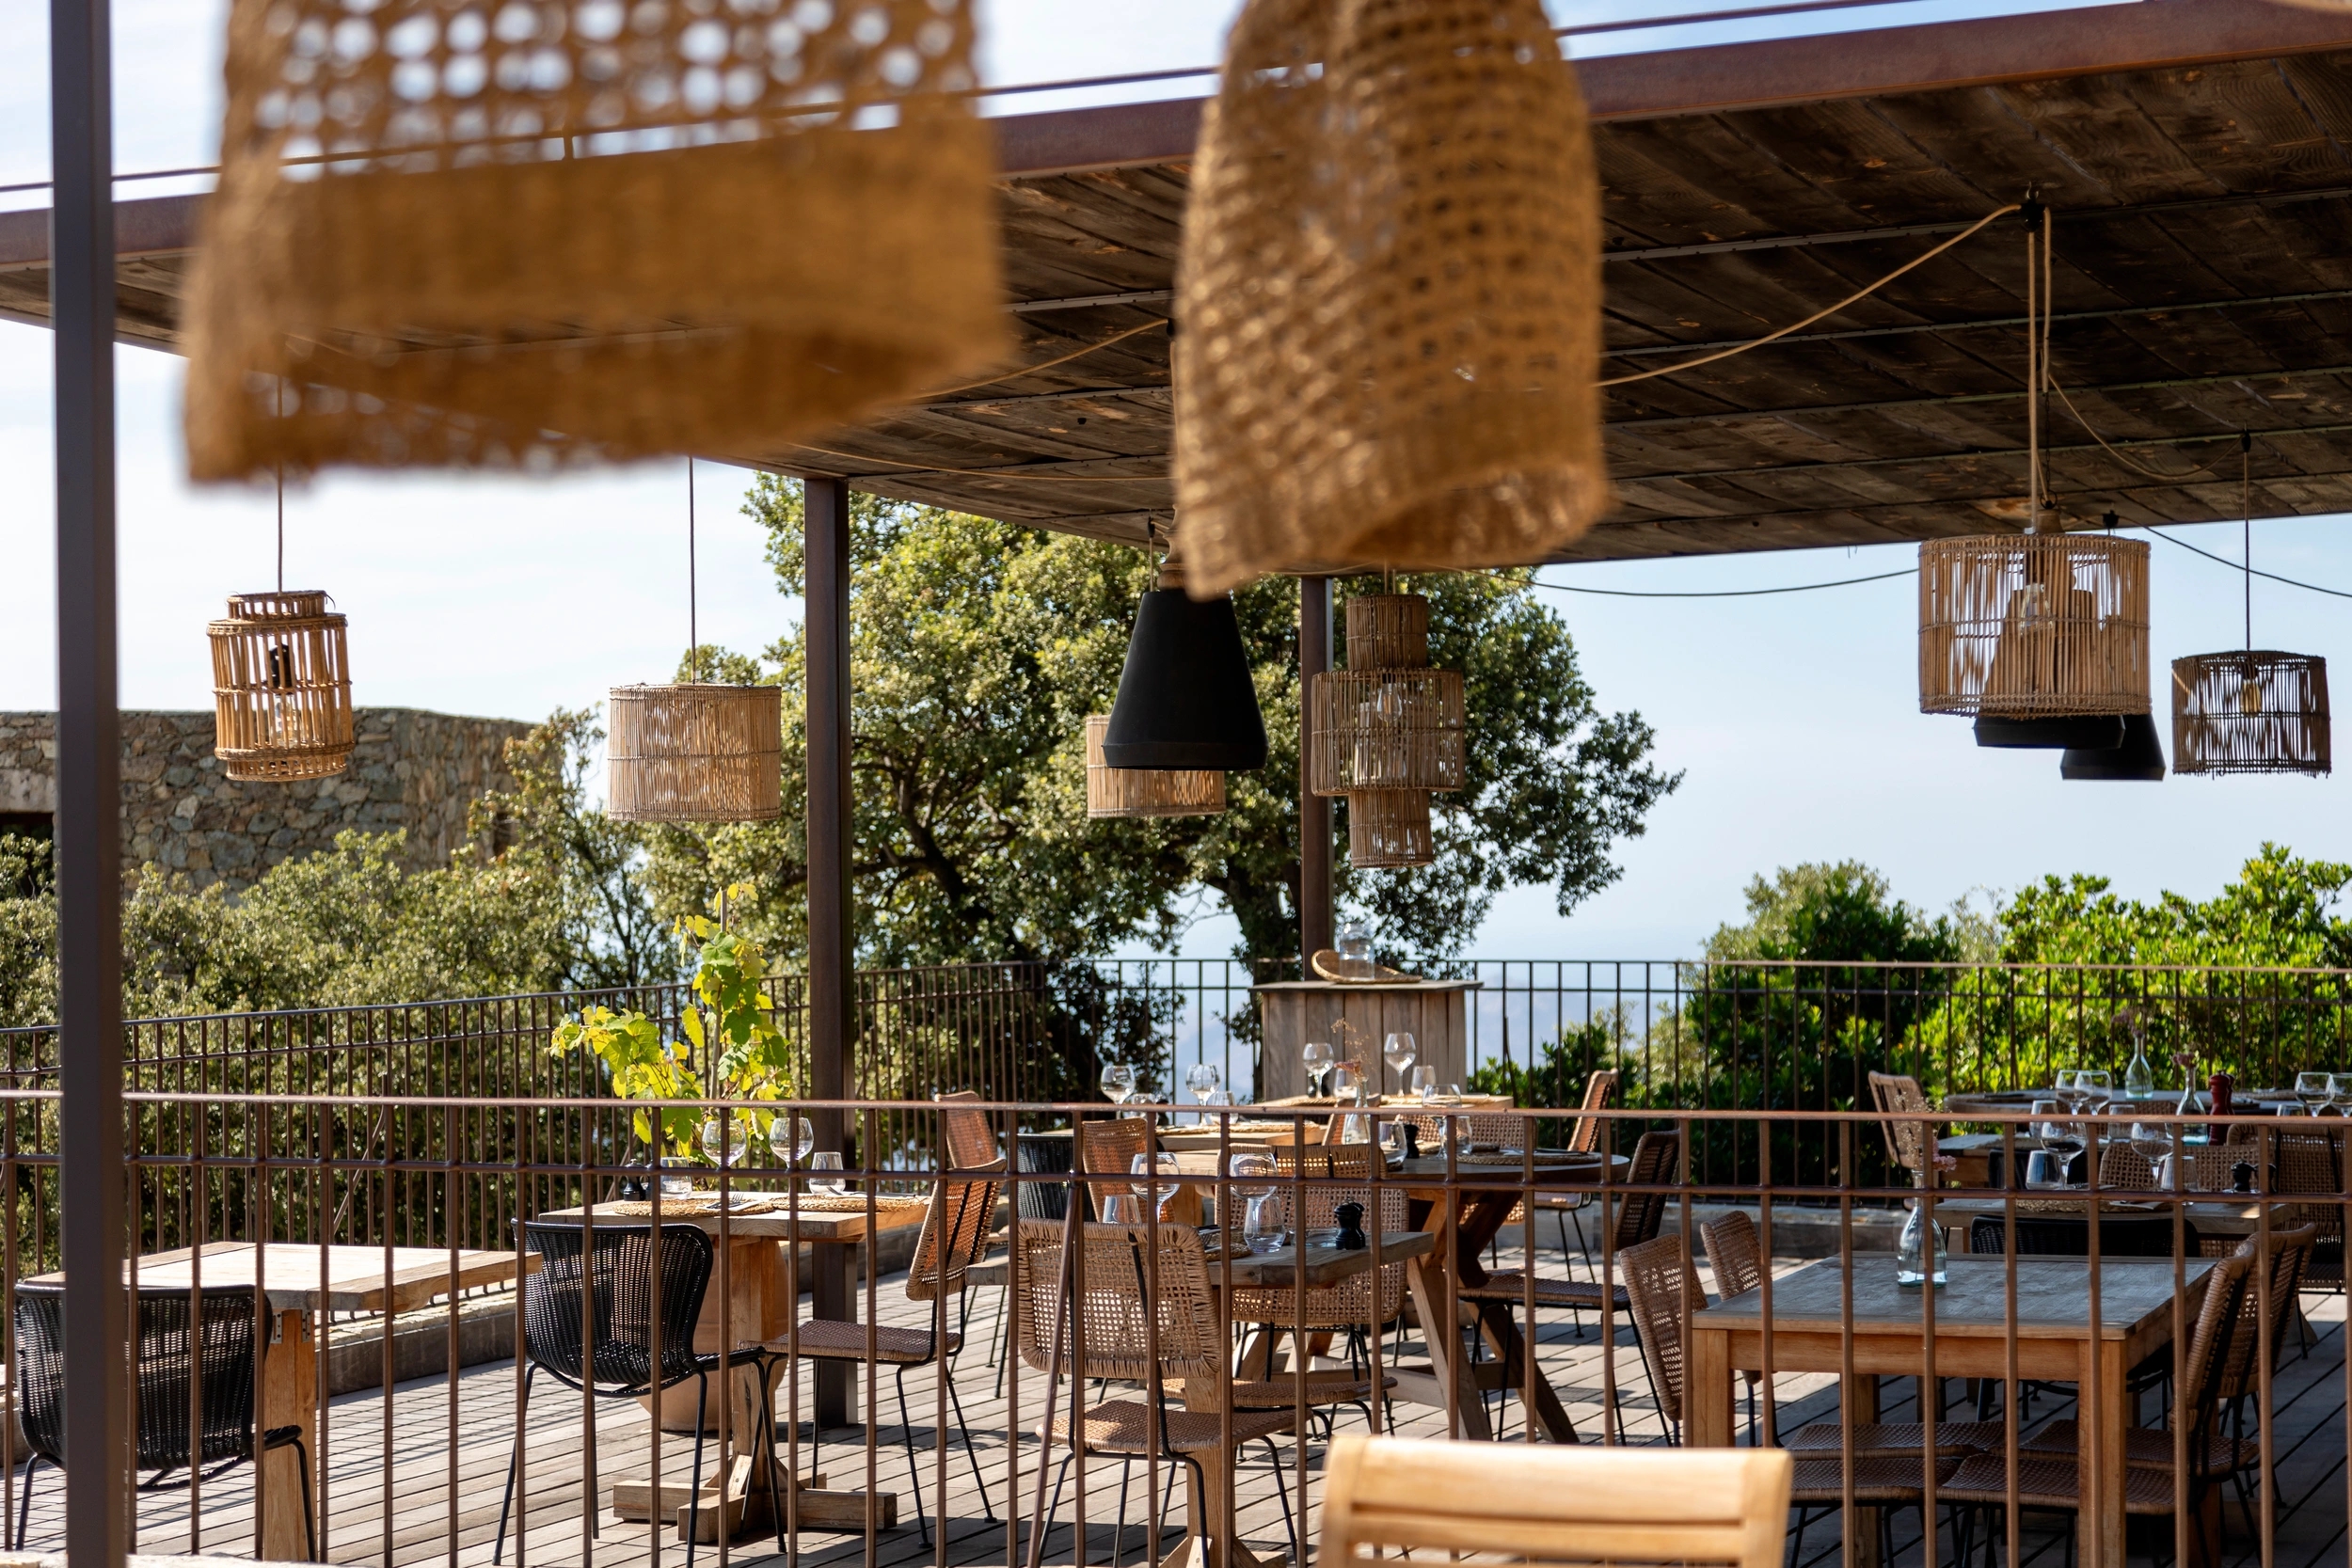 La terrasse chaleureuse du restaurant authentique Suspesu en Balagne